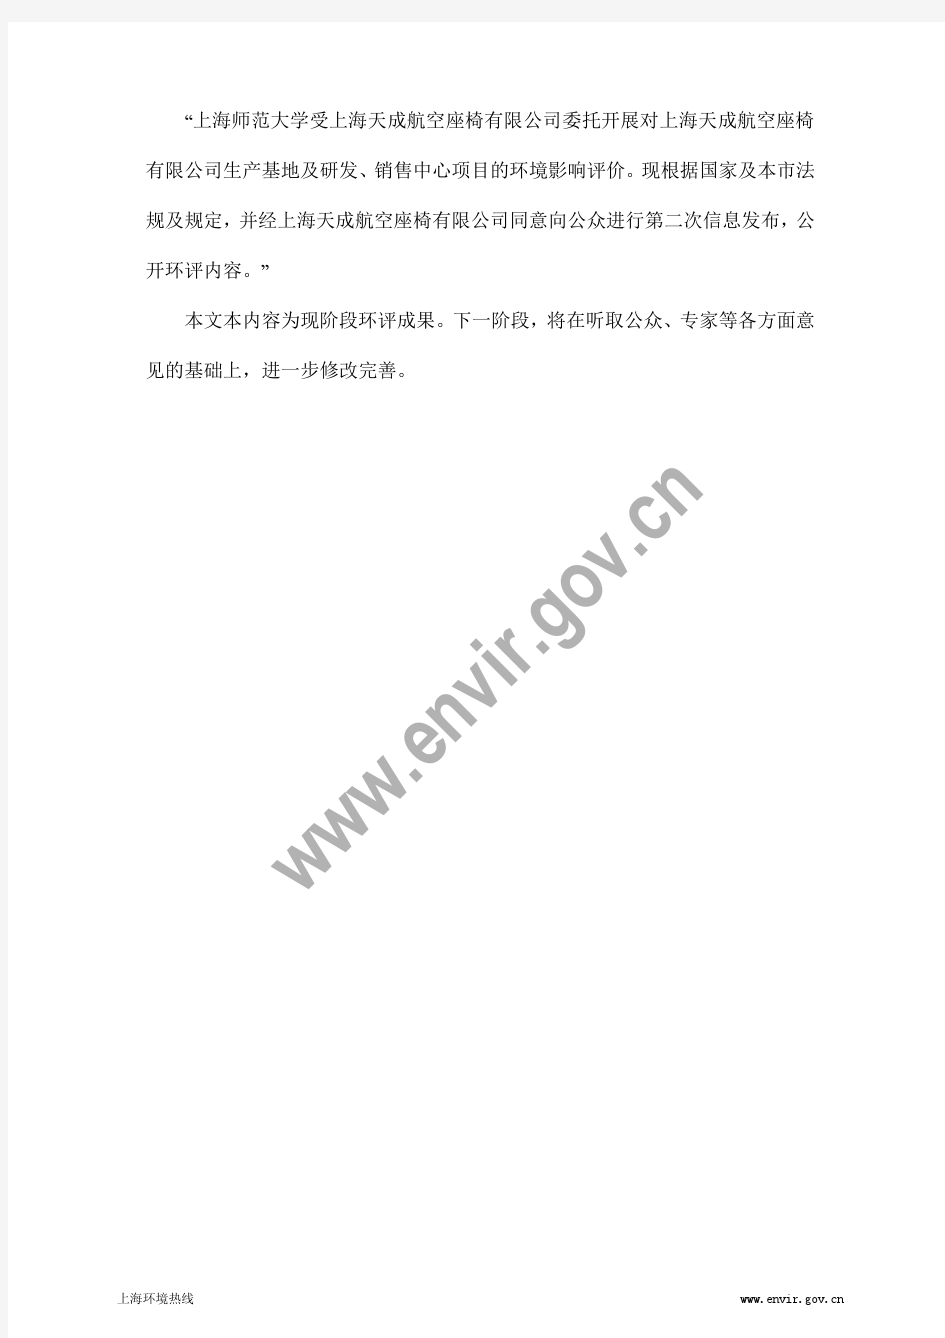 201306-上海天成航空座椅有限公司生产基地及研发、销售中心项目环境影响评价第二次公示